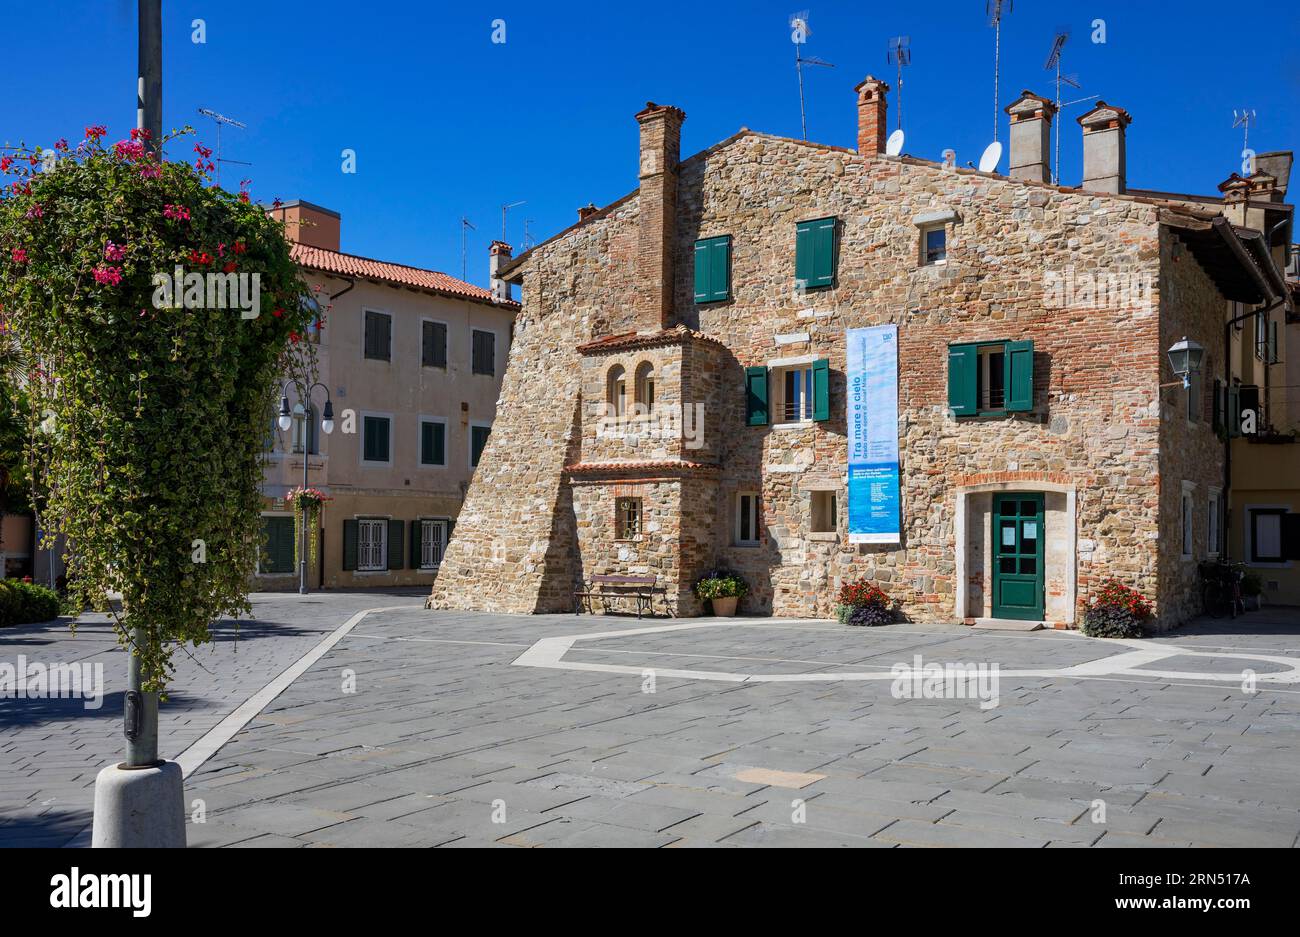 Casa della musica, The House of Music in the old town of Grado, Friuli Venezia Giulia, Italy Stock Photo